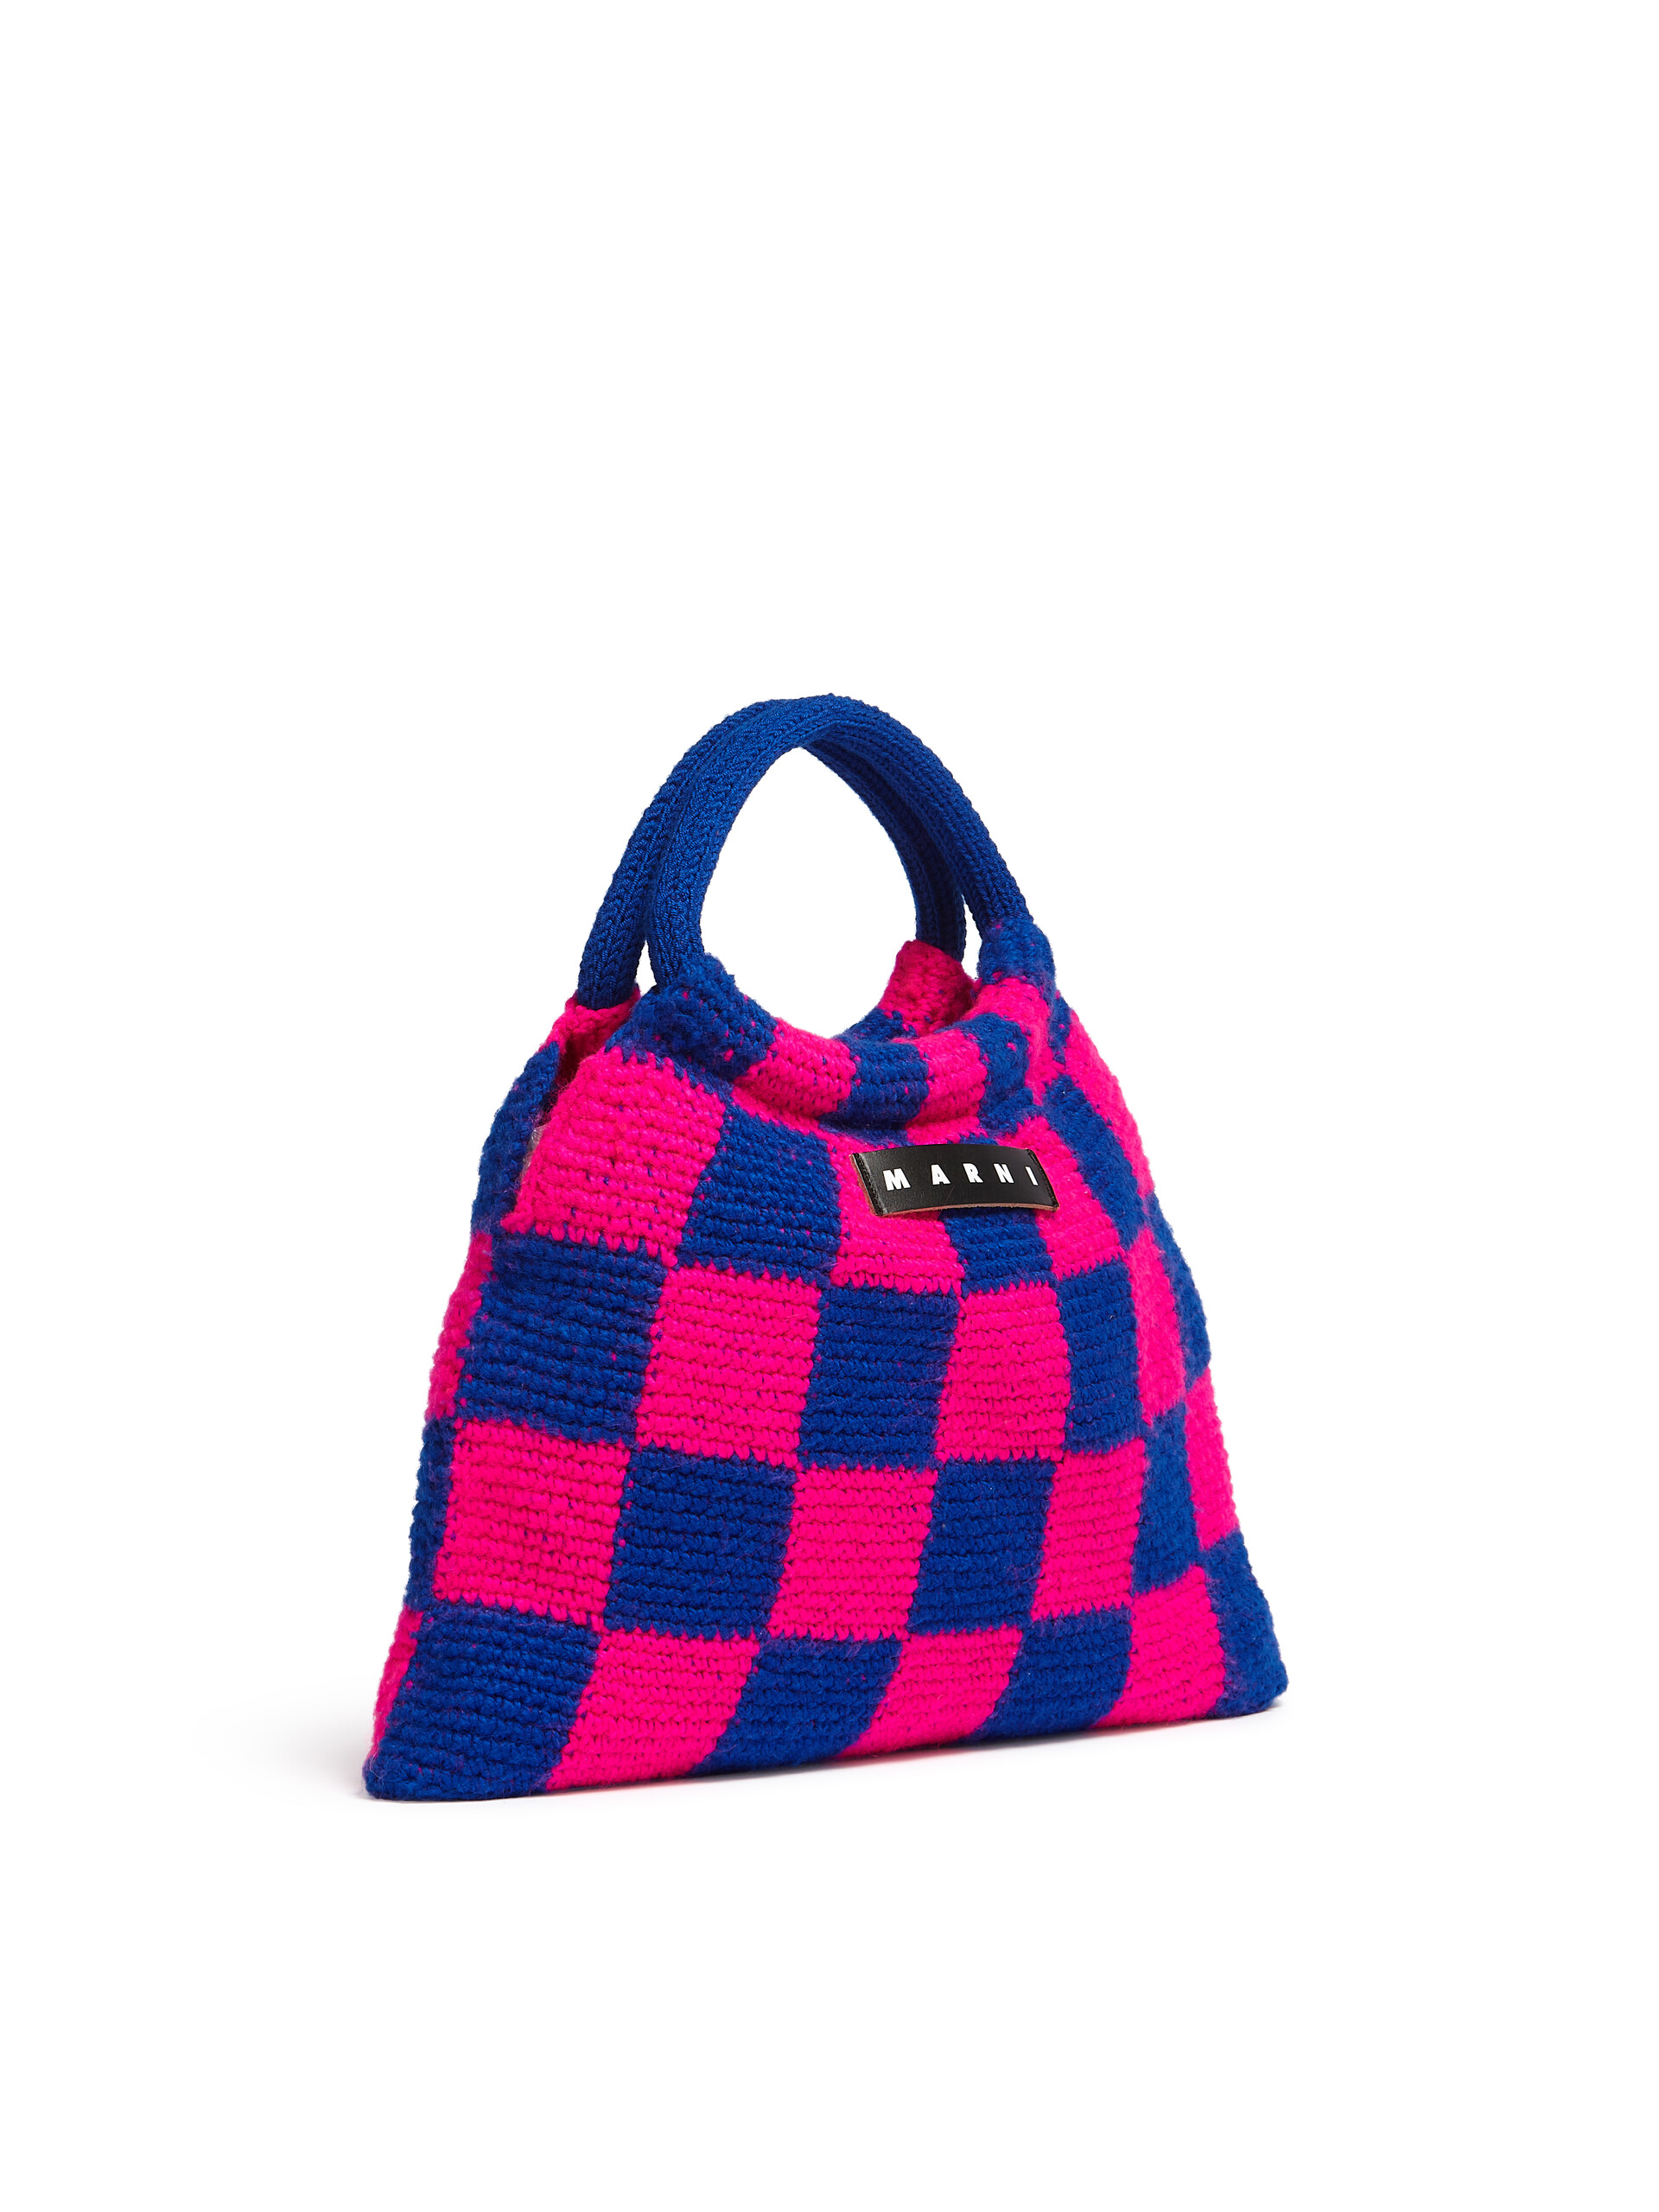 Bolso MARNI MARKET GRANNY de croché rosa y azul - Bolsos shopper - Image 2